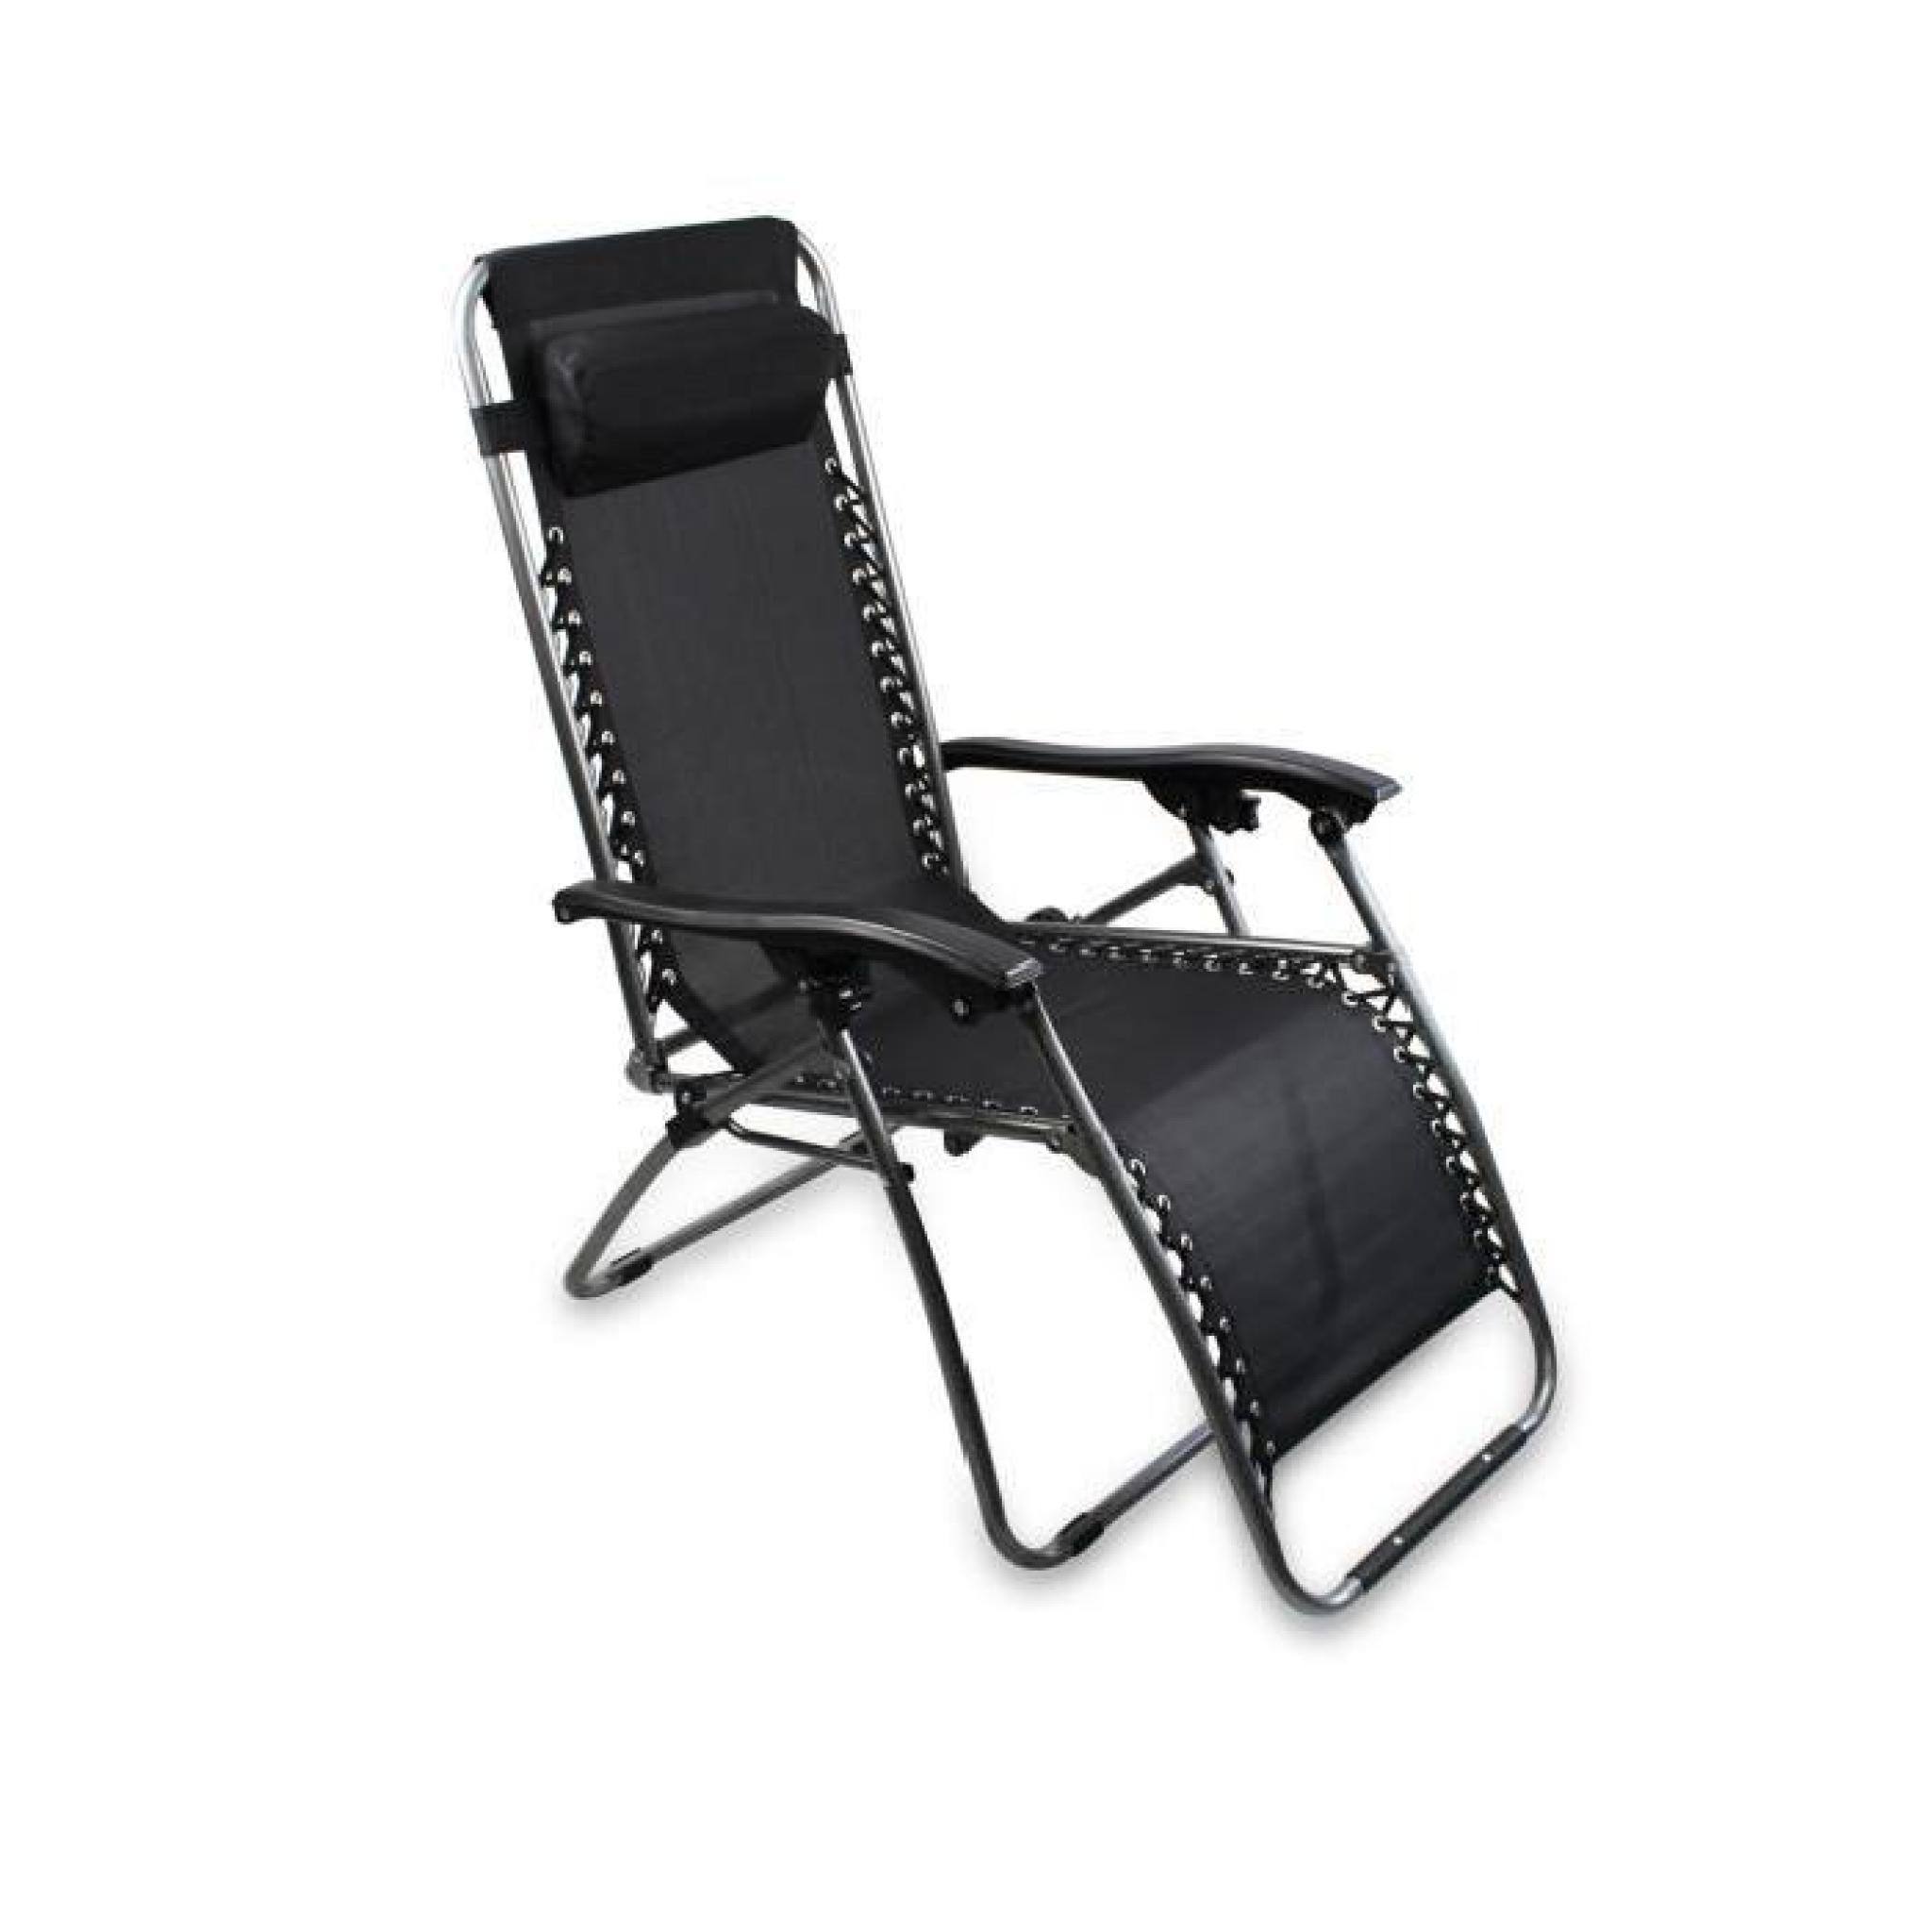 Chaise longue bain de soleil, chaise de jardin inclinable, transat métal et toile textilène noire